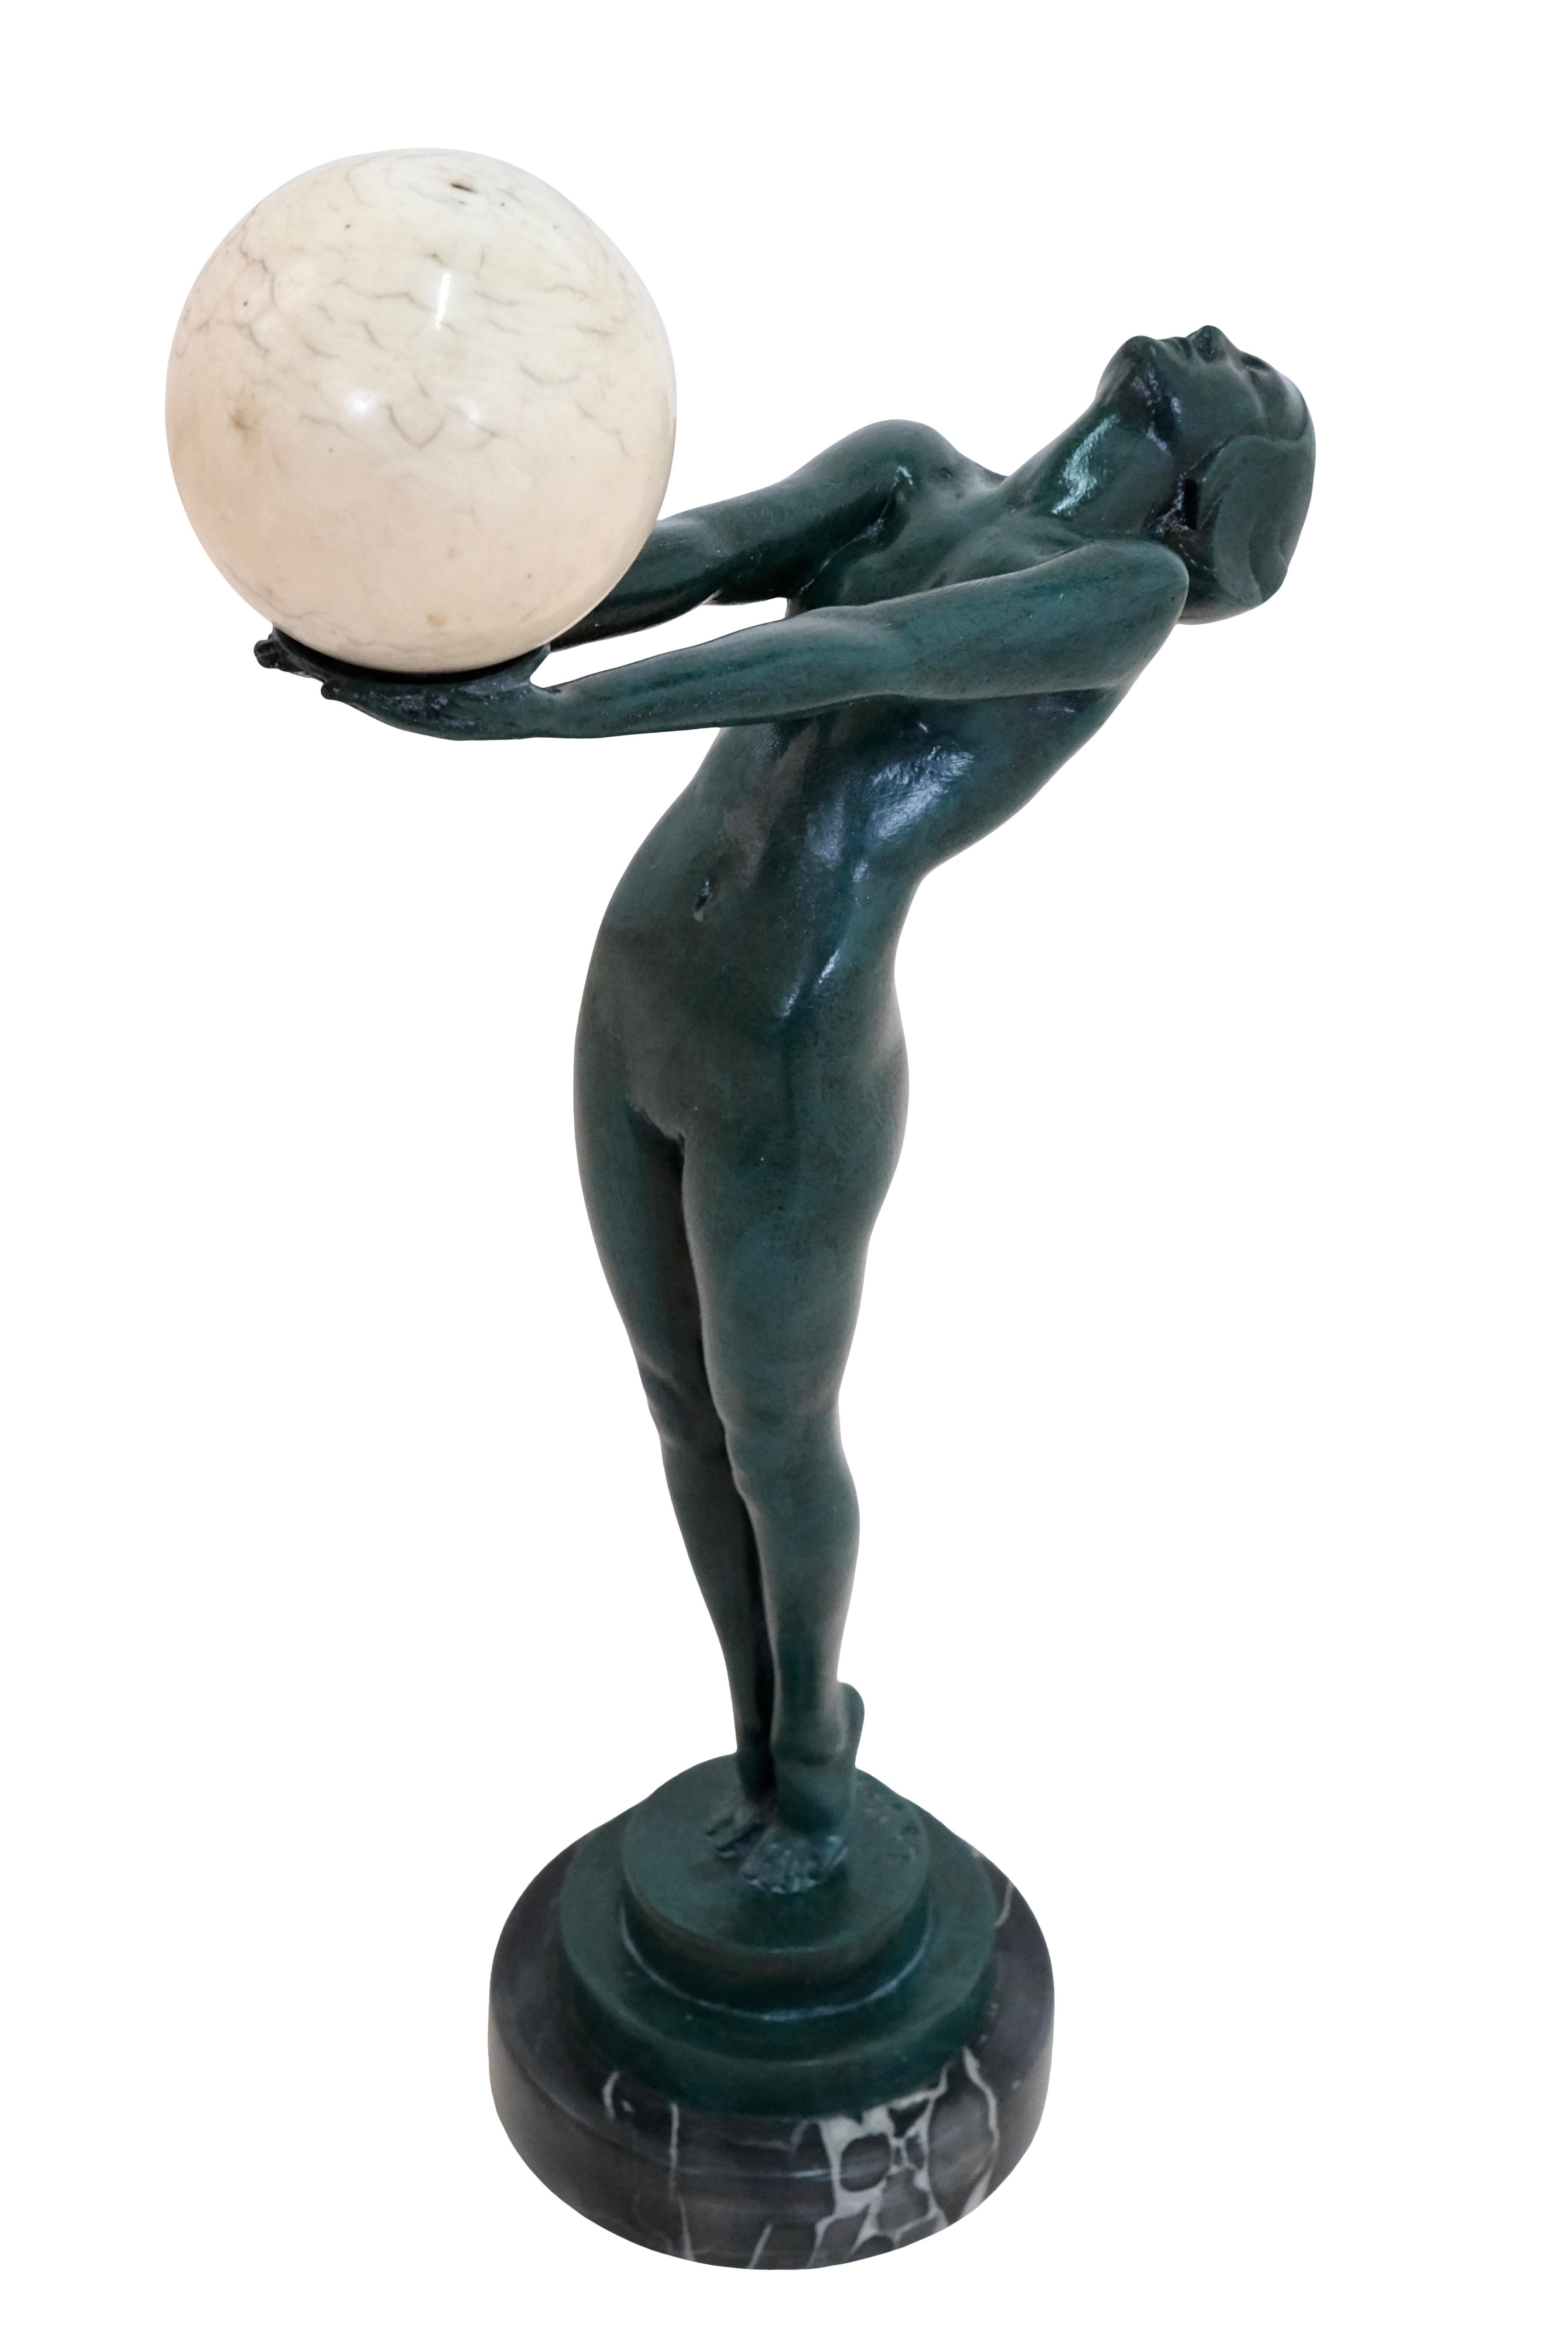 En 1928, Max Le Verrier crée sa célèbre CLARTÉ, une femme avec une boule de verre lumineuse, l'œuvre principale de sa carrière de sculpteur.

En fait, il fallait plusieurs modèles vivants : un pour la tête, un deuxième pour la partie supérieure du